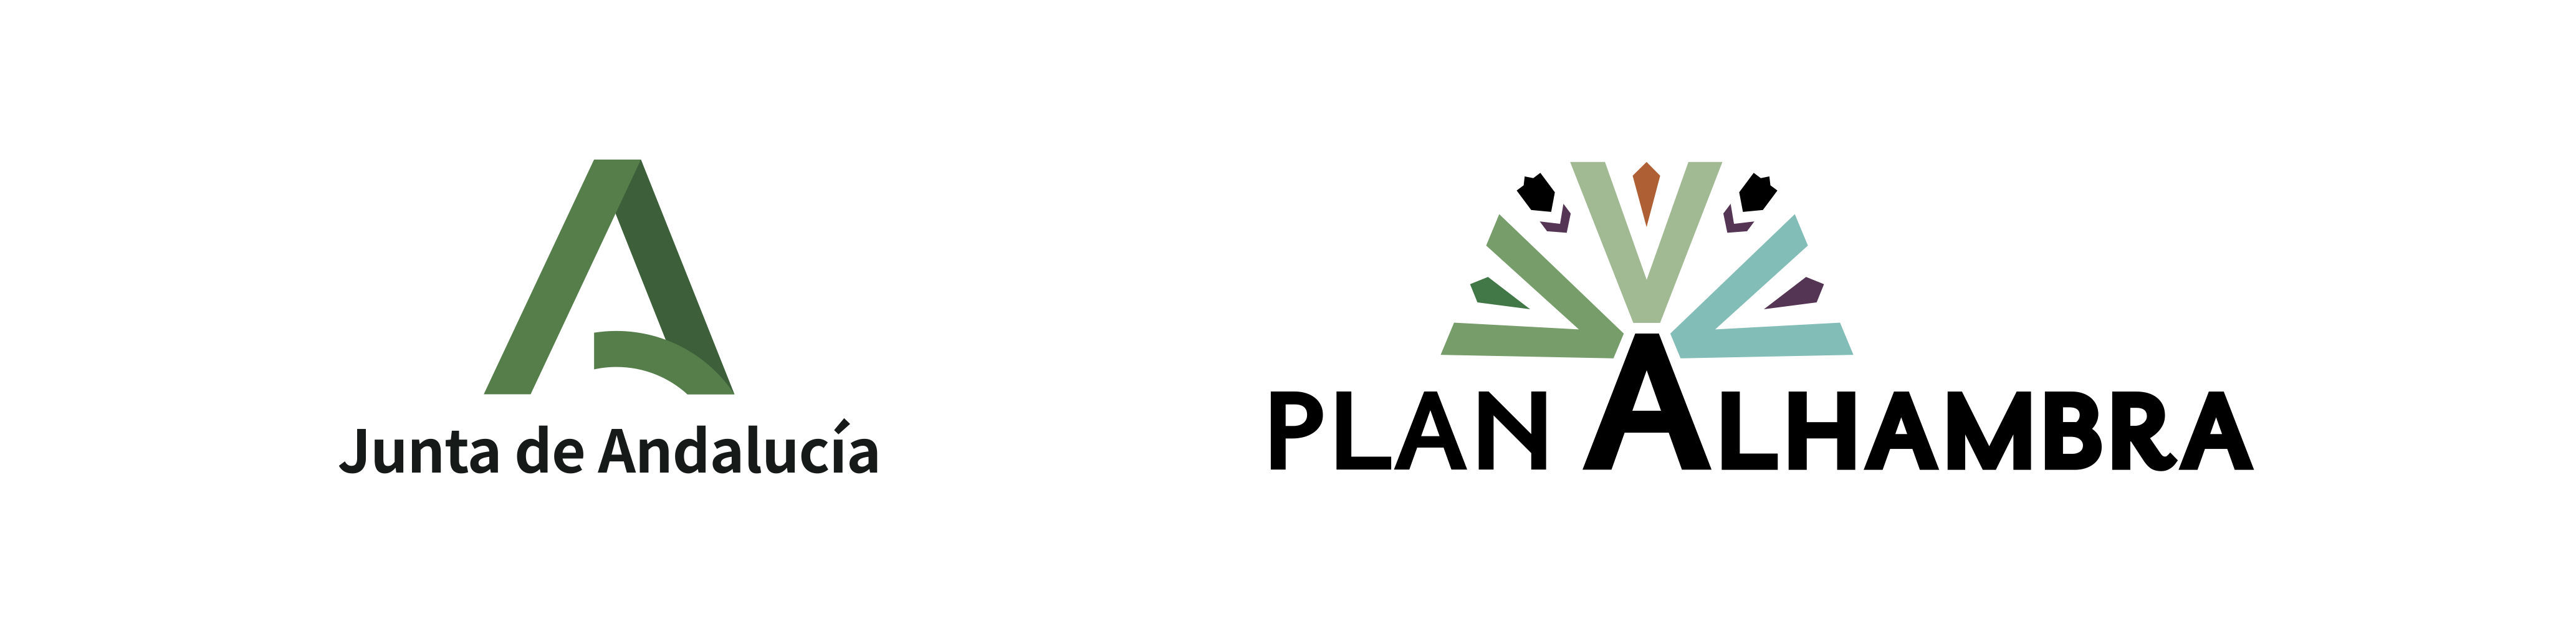 Plan Alhambra Logos